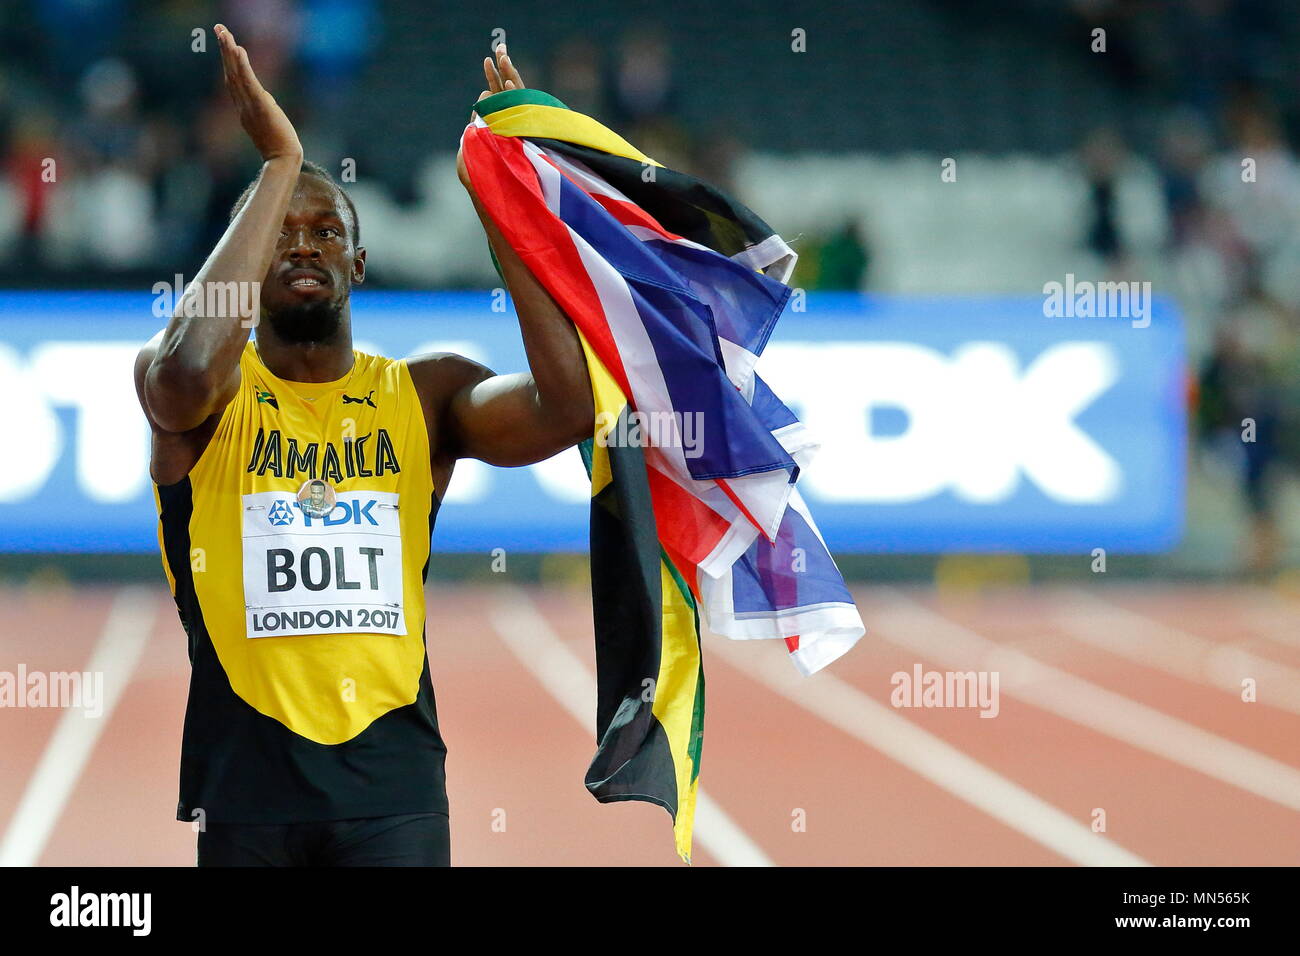 LONDON, ENGLAND - 05. August: Usain Bolt aus Jamaika, das seine letzten 100 m Rennen, begrüßt die Masse während einer Ehrenrunde durch während der Tag zwei des 16. IAAF Leichtathletik WM 2017 in London an der London Stadion am 5. August 2017 in London, Vereinigtes Königreich. Foto von Paul Cunningham Stockfoto